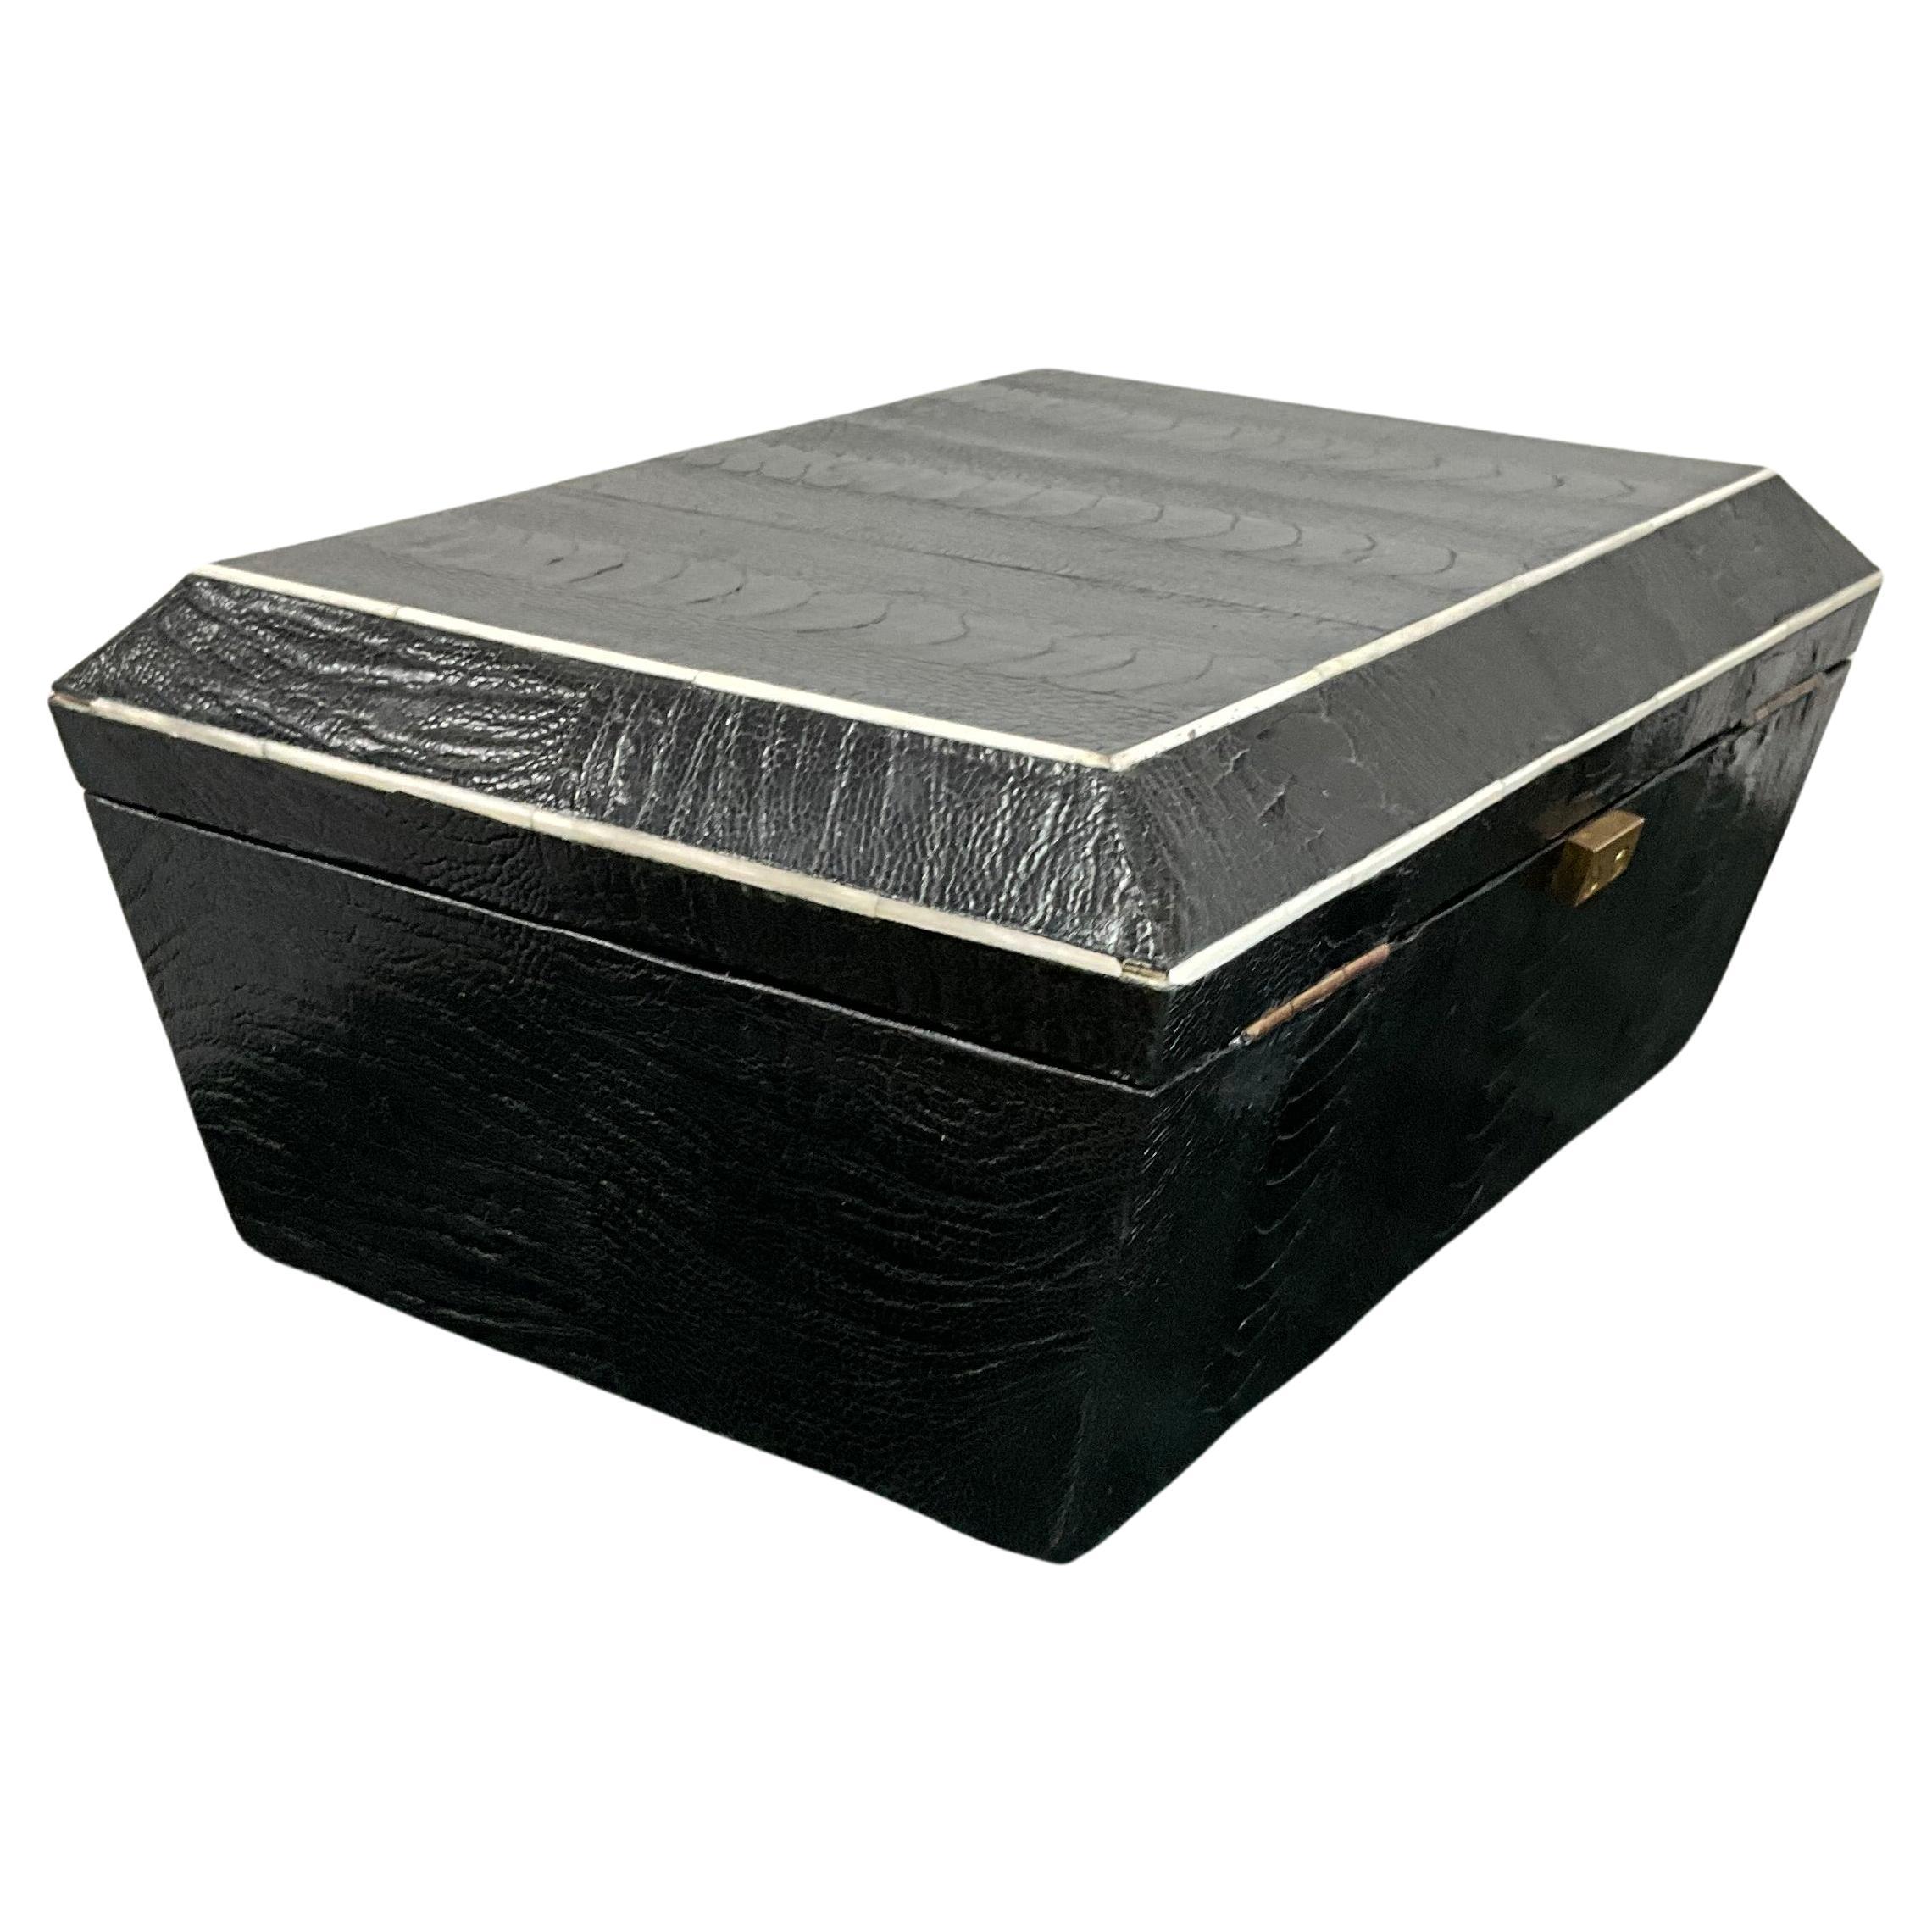 Grande boîte en bois recouverte de peau de serpent, avec un plateau supérieur amovible à l'intérieur, qui convient pour les bijoux ou les petits souvenirs. L'intérieur est doublé de feutre noir et porte l'étiquette en laiton de R&Y Augousti sur la